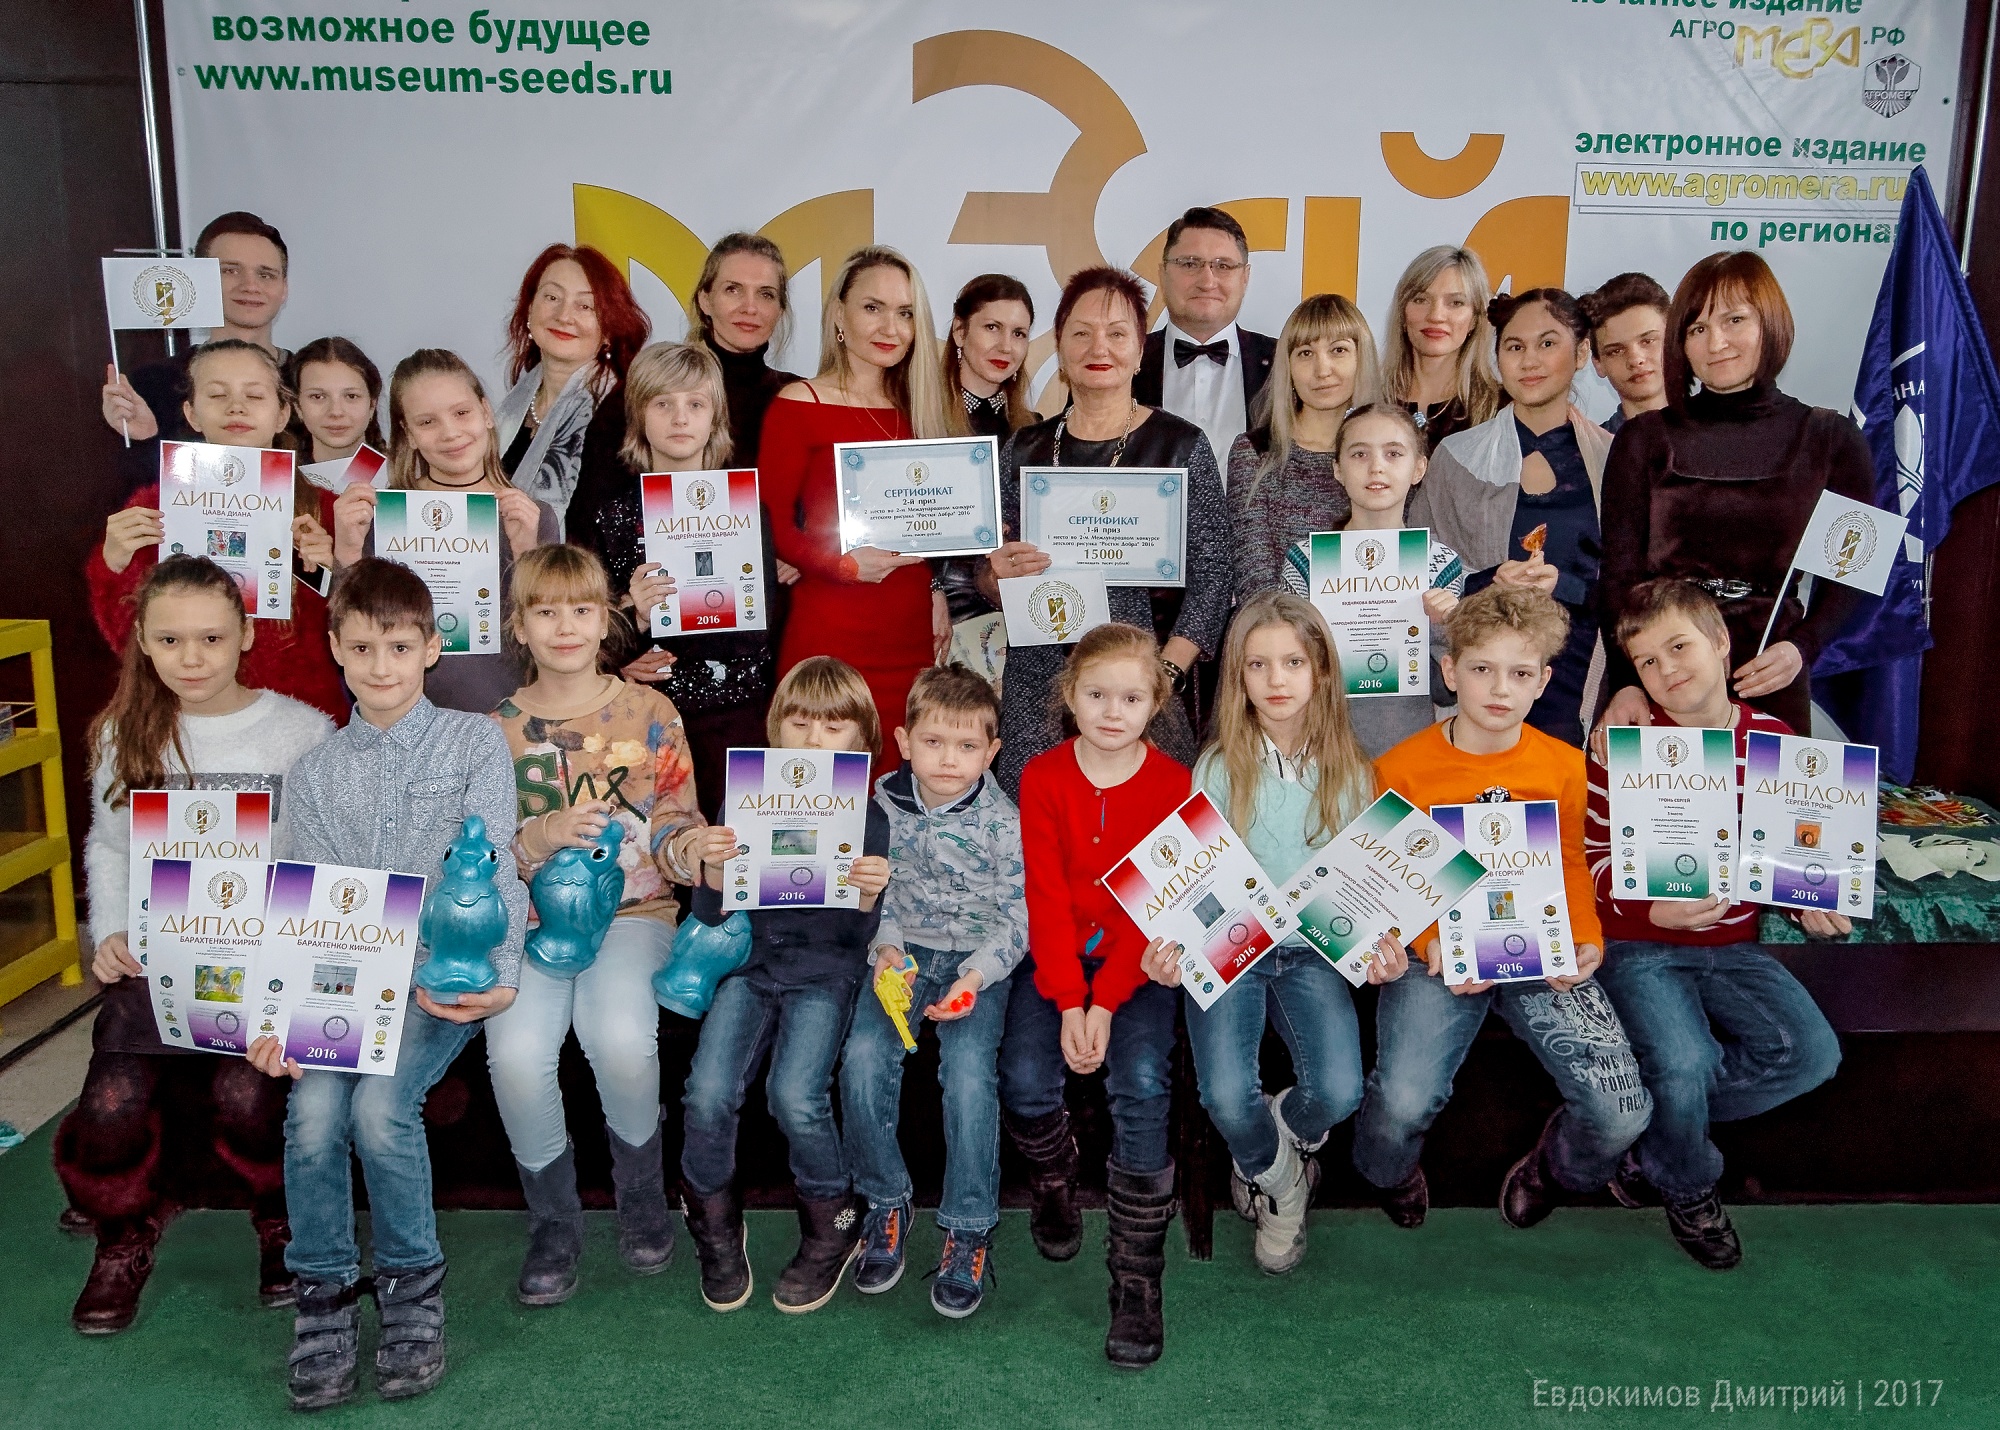 Победители 2 Международного конкурса детского рисунка «Ростки добра» получили призы и награды